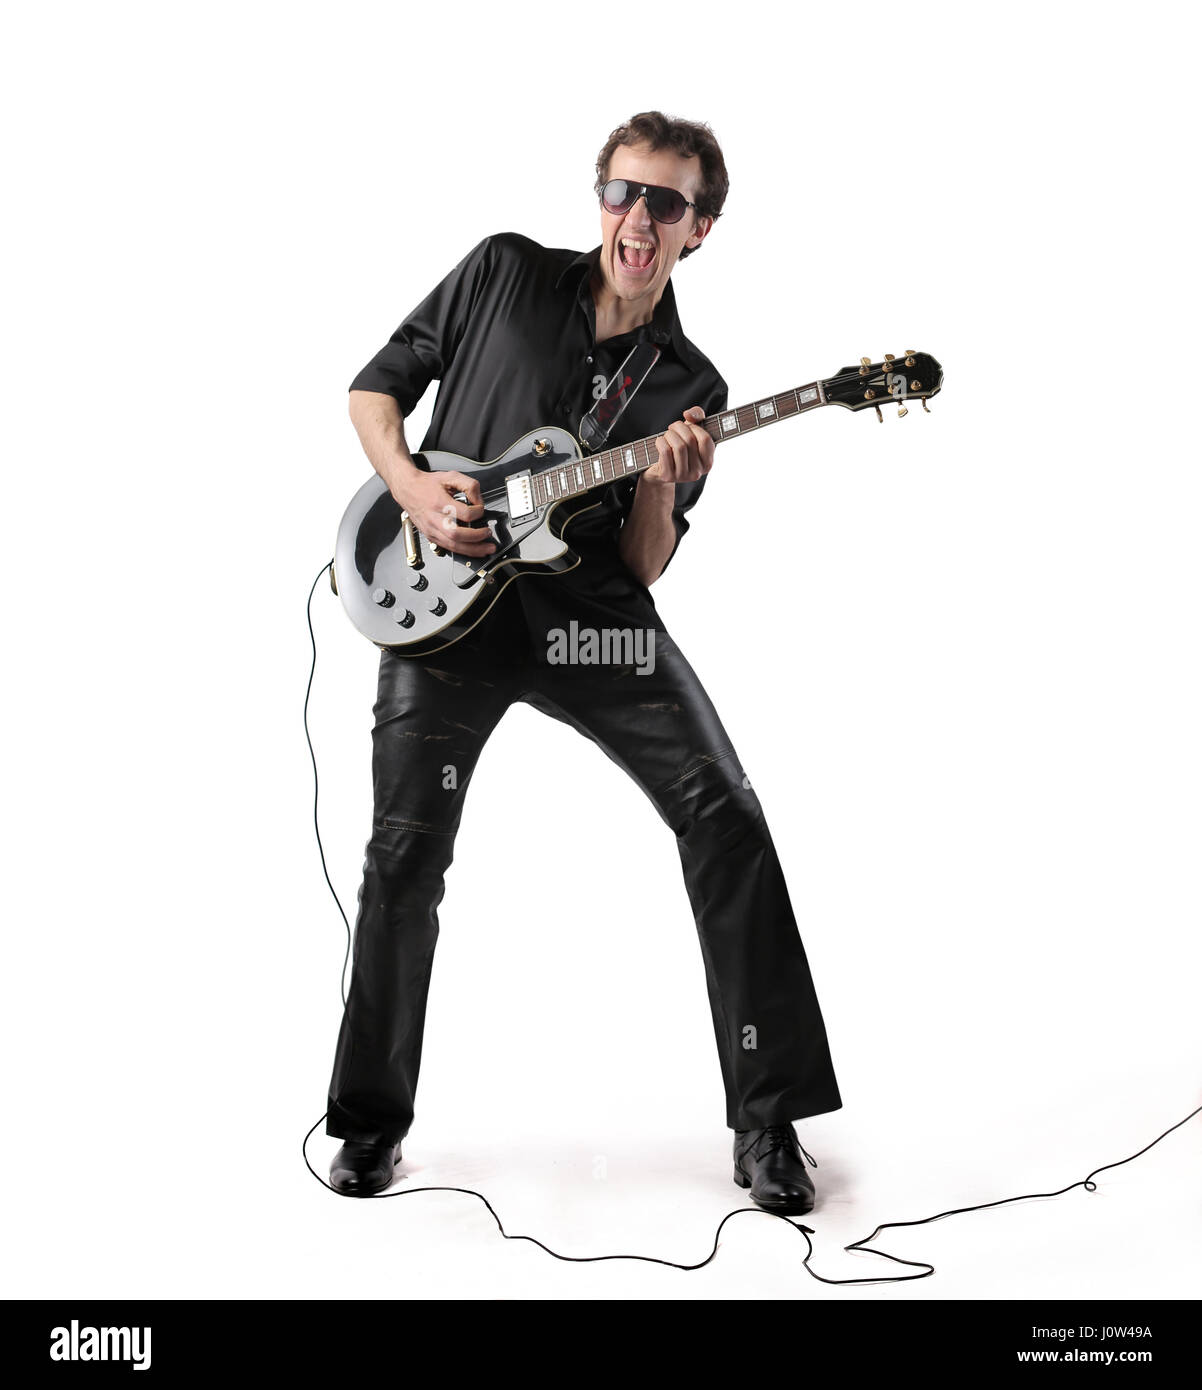 Singer man playing on guitar Stock Photo